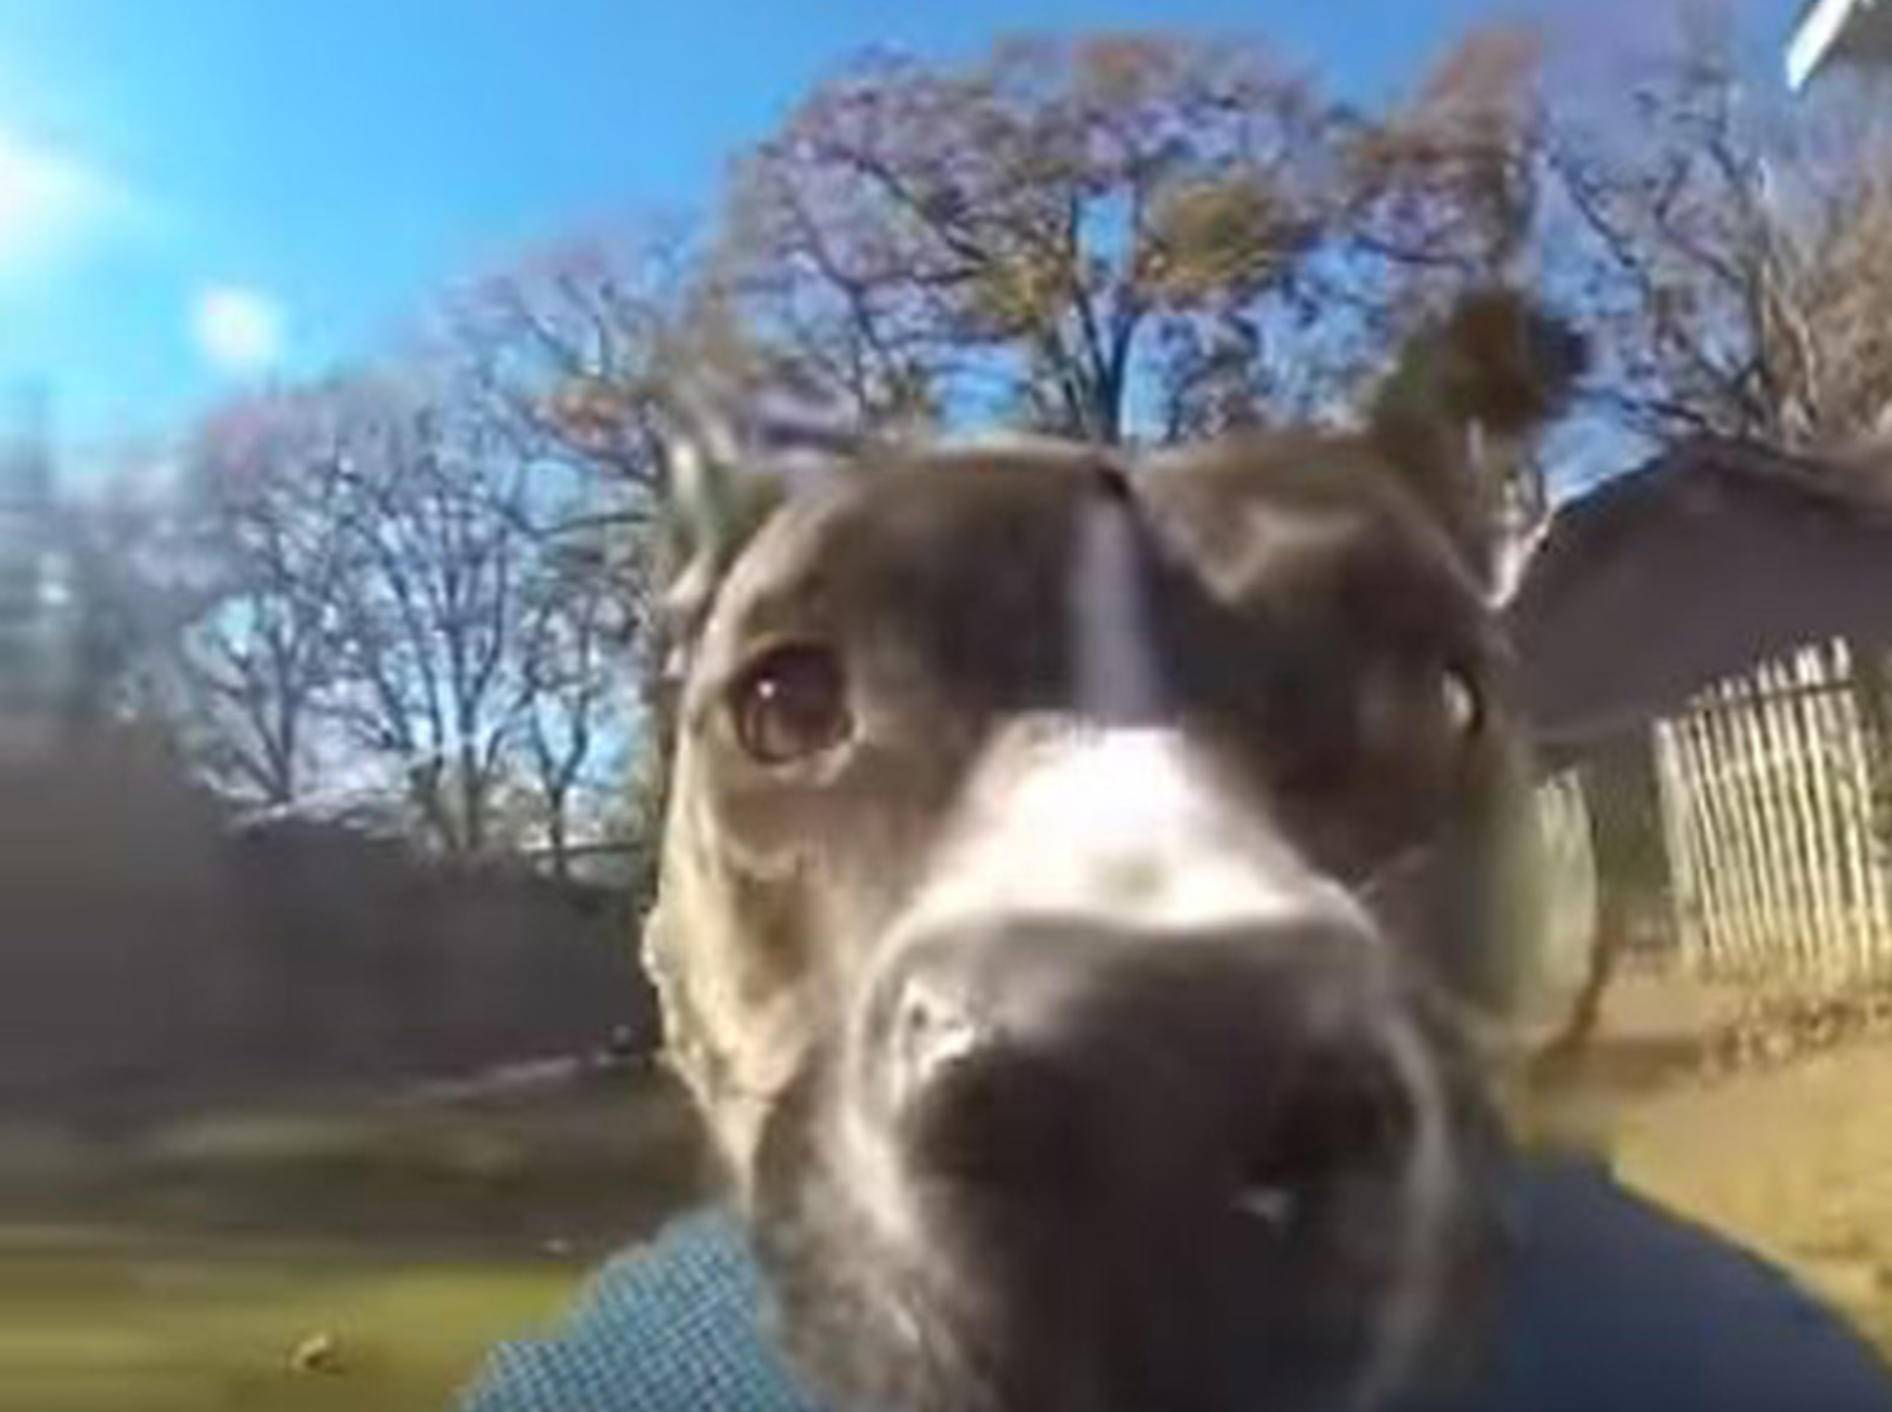 Hundedame Bonnie hat sich die GoPro ihres Besitzers gemopst - Bild: YouTube / RM Videos